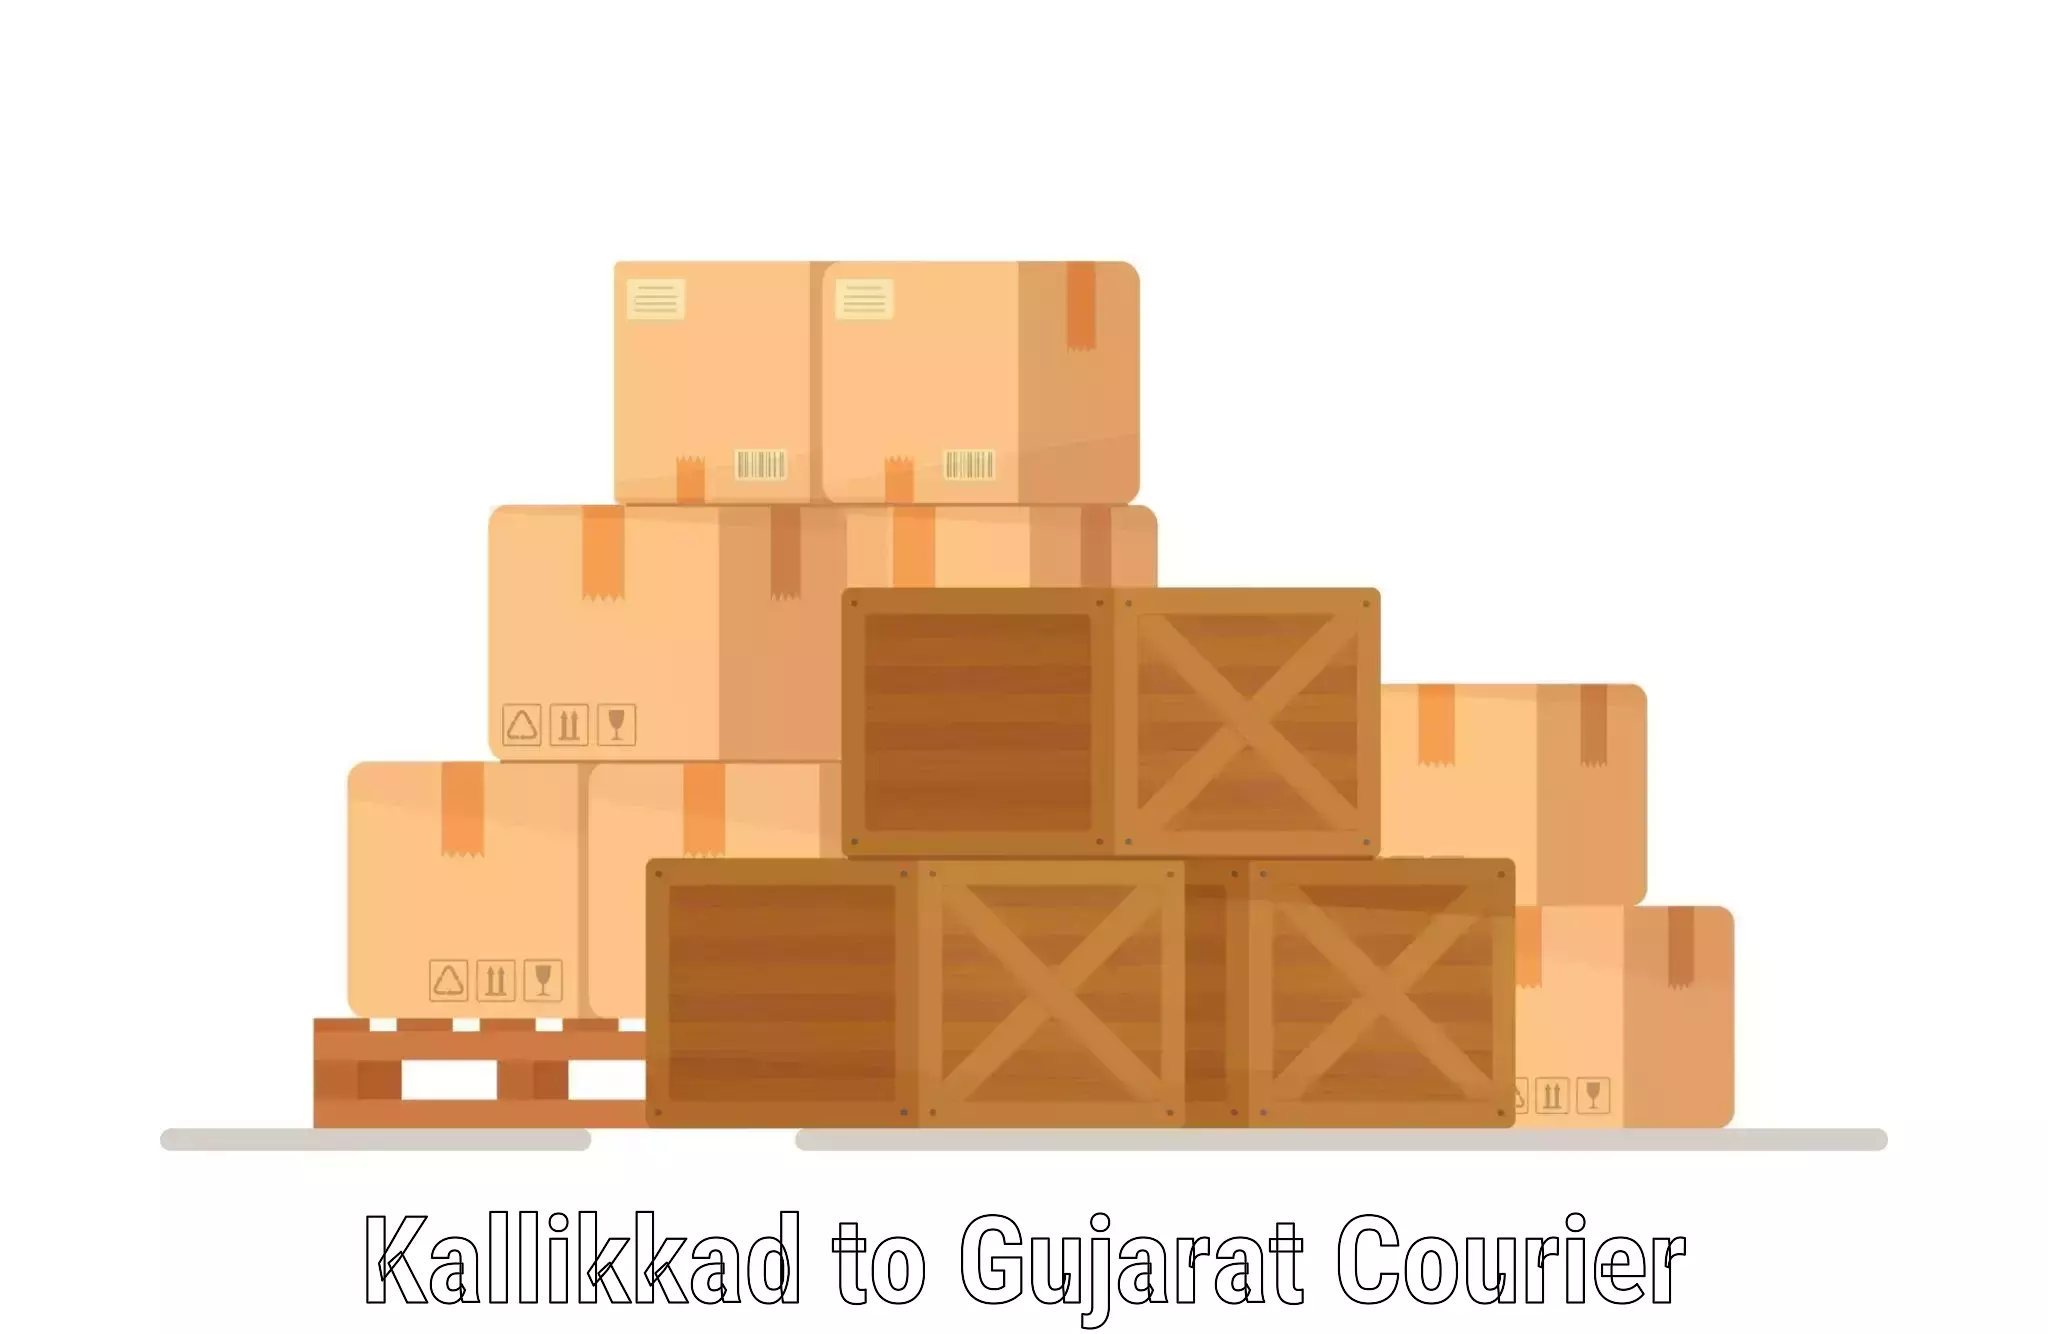 High-speed delivery Kallikkad to Gujarat